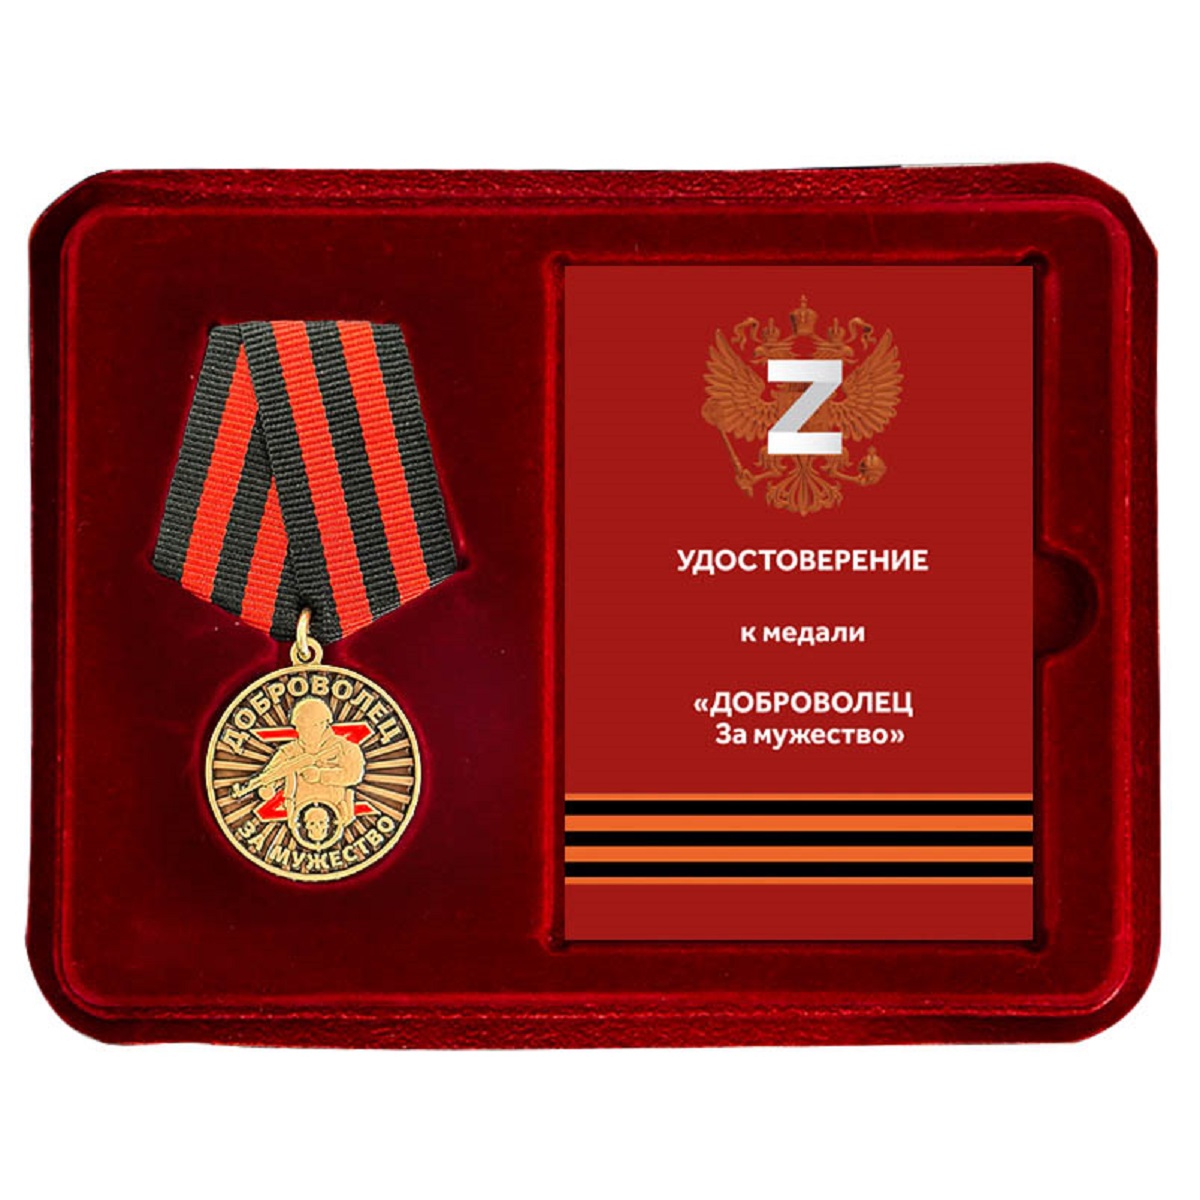 Медали "за мужество" добровольцам СВО в футлярах